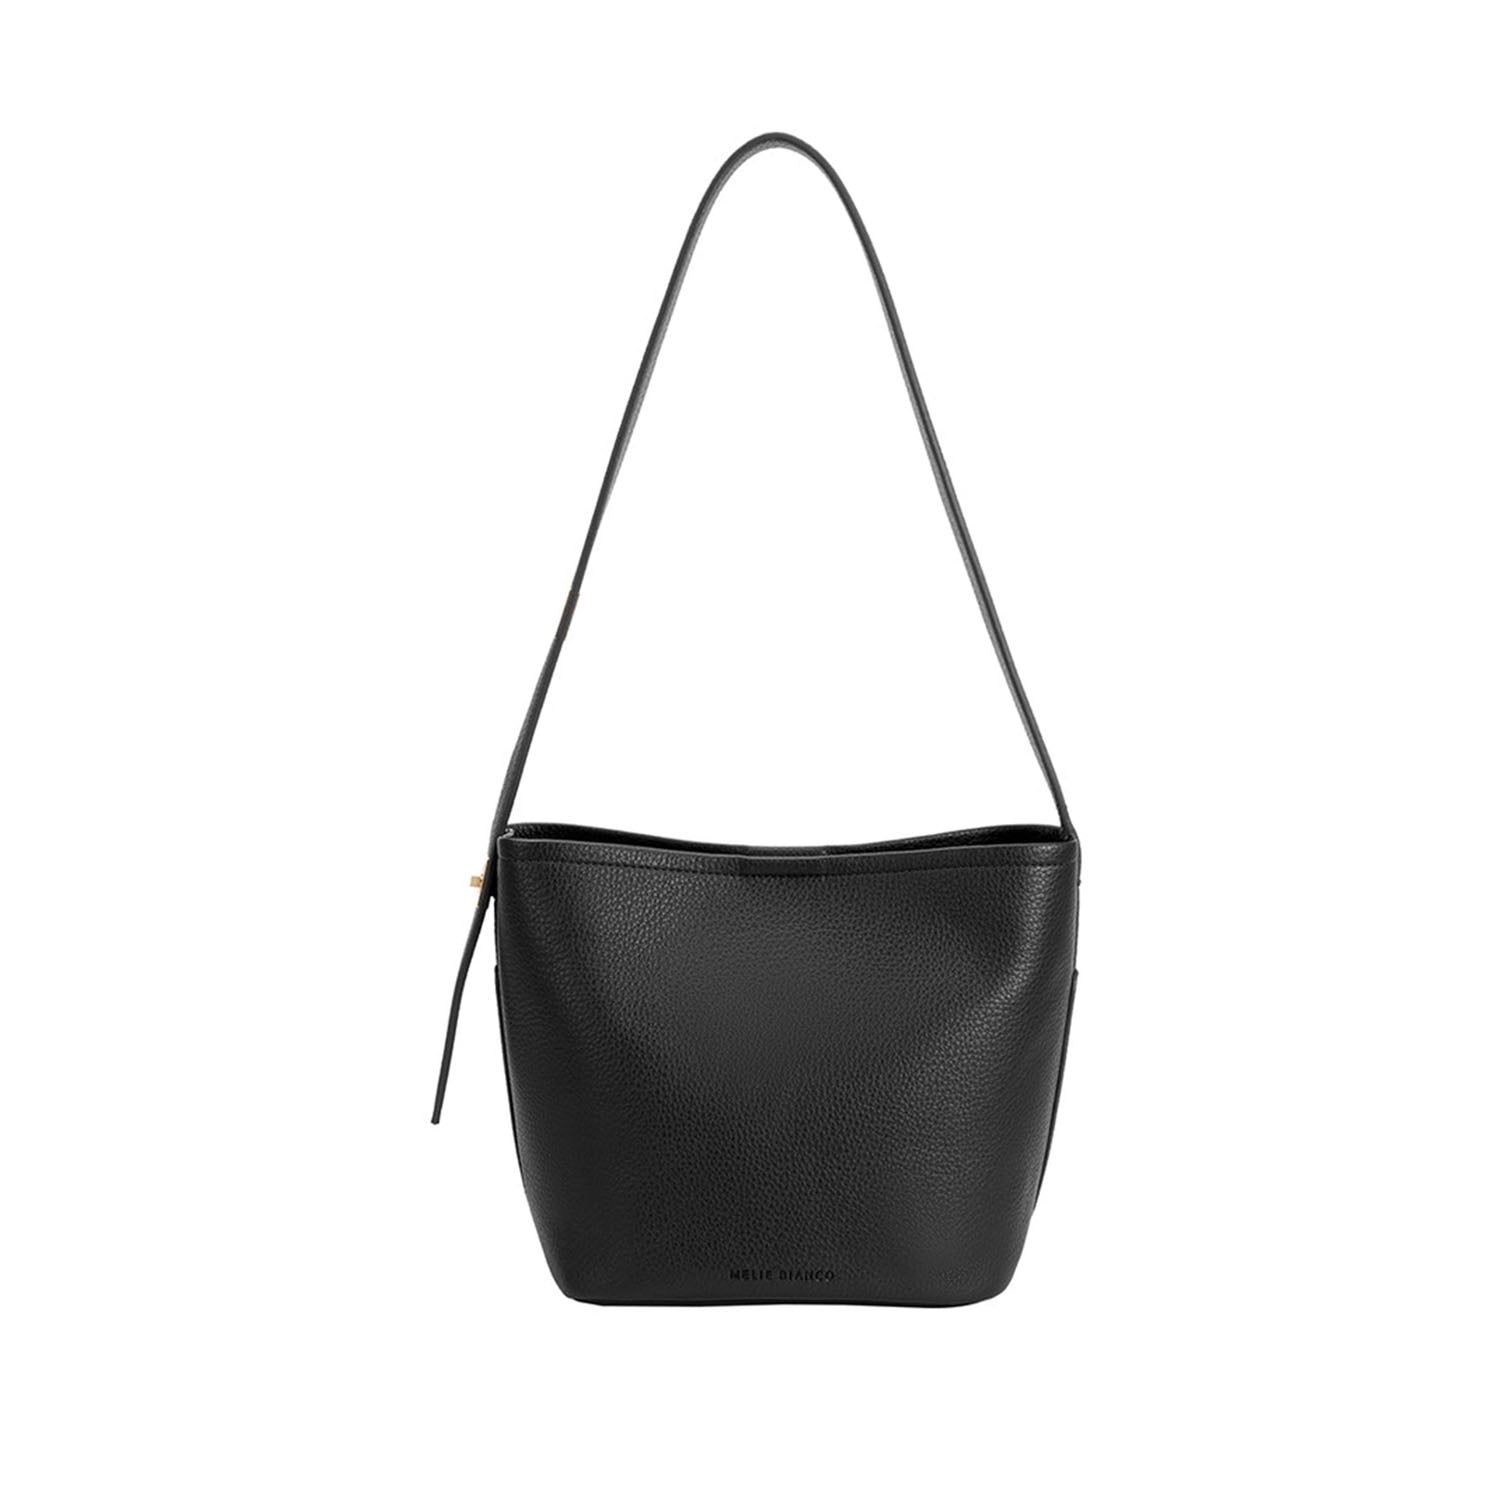 Melie Bianco Women's Irina Shoulder Bag in Black